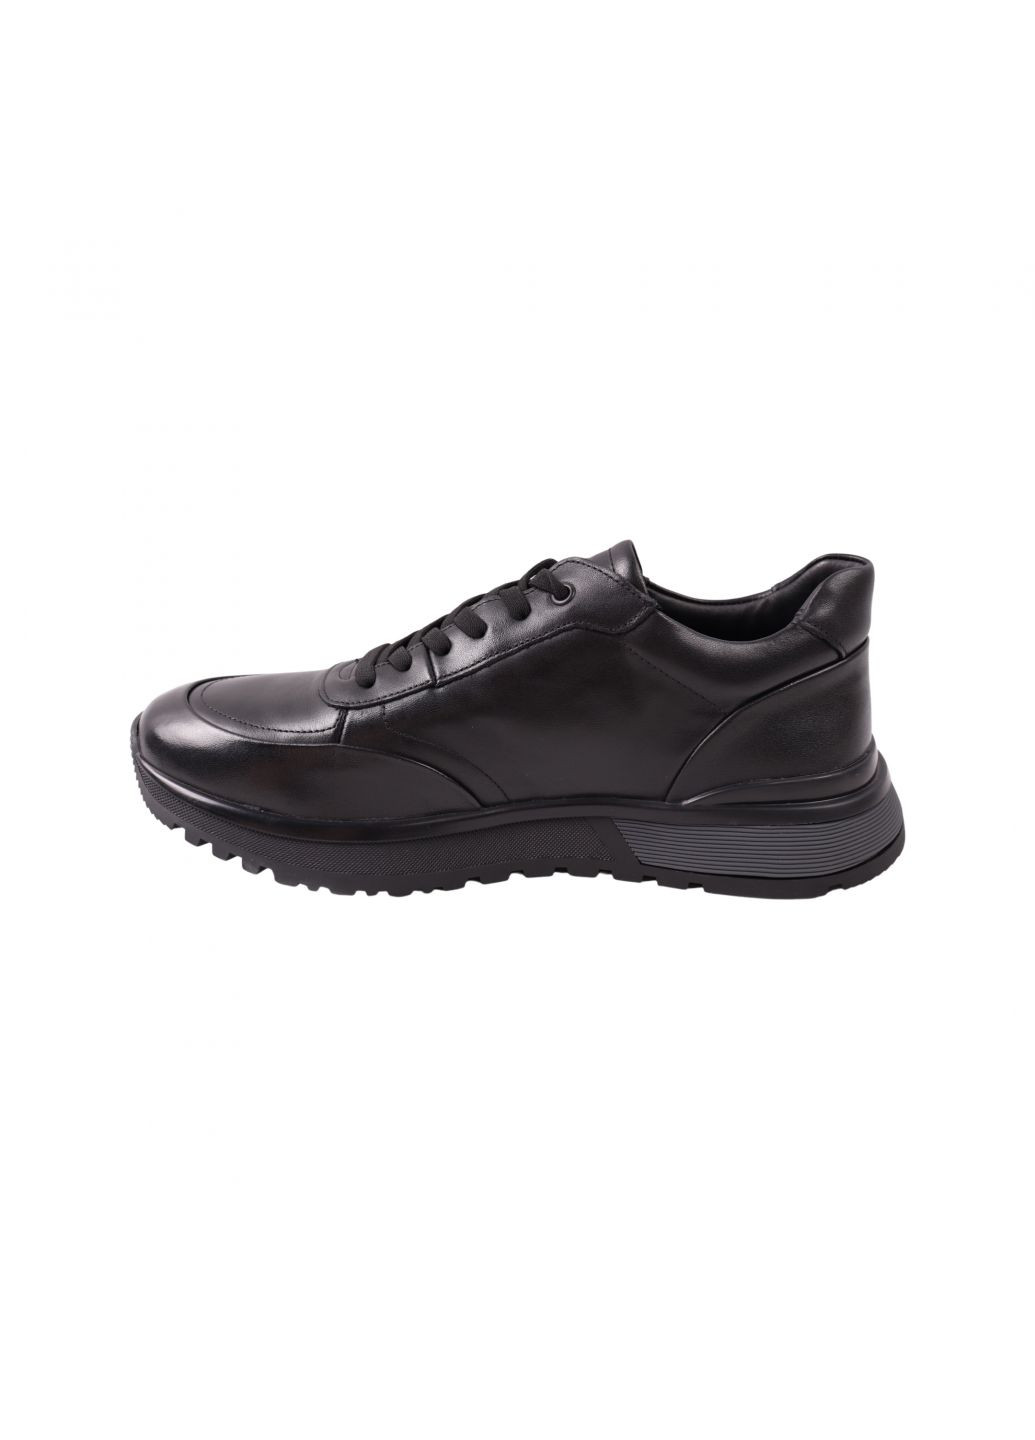 Чорні кросівки чоловічі чорні натуральна шкіра Brooman 971-23DTS